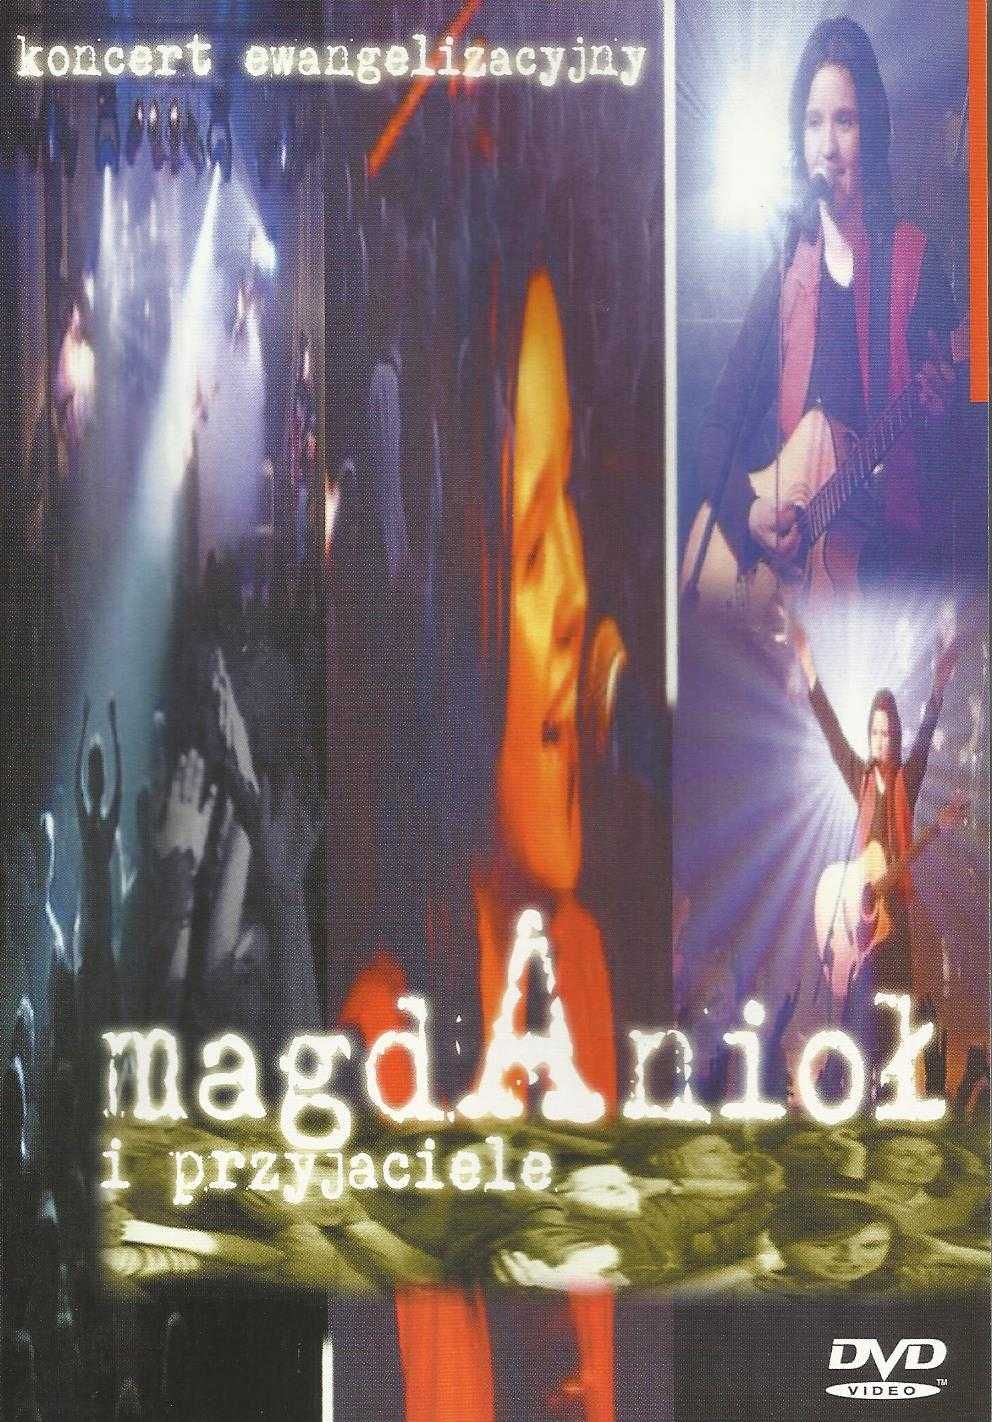 MAGDA ANIOŁ I PRZYJACIELE Live 2004, limitowany BOX dvd